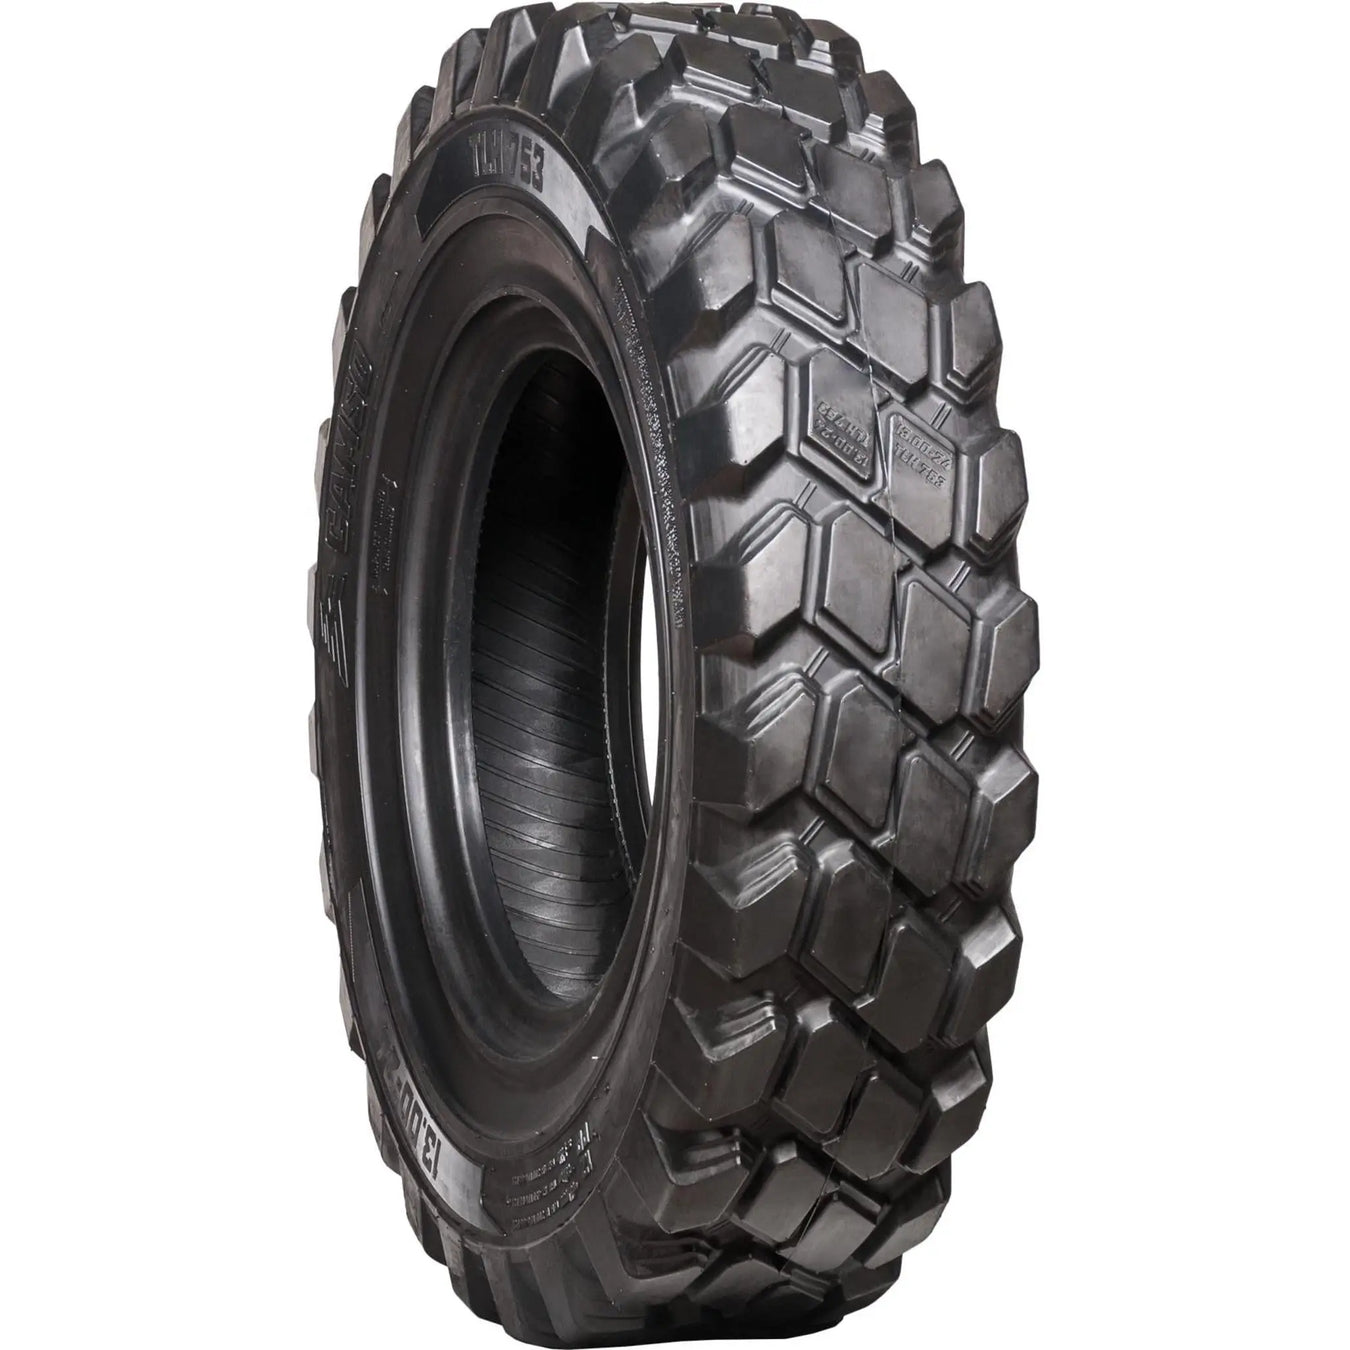 Telehandler Tires - Pneumatic Tire Size - 13.00-24